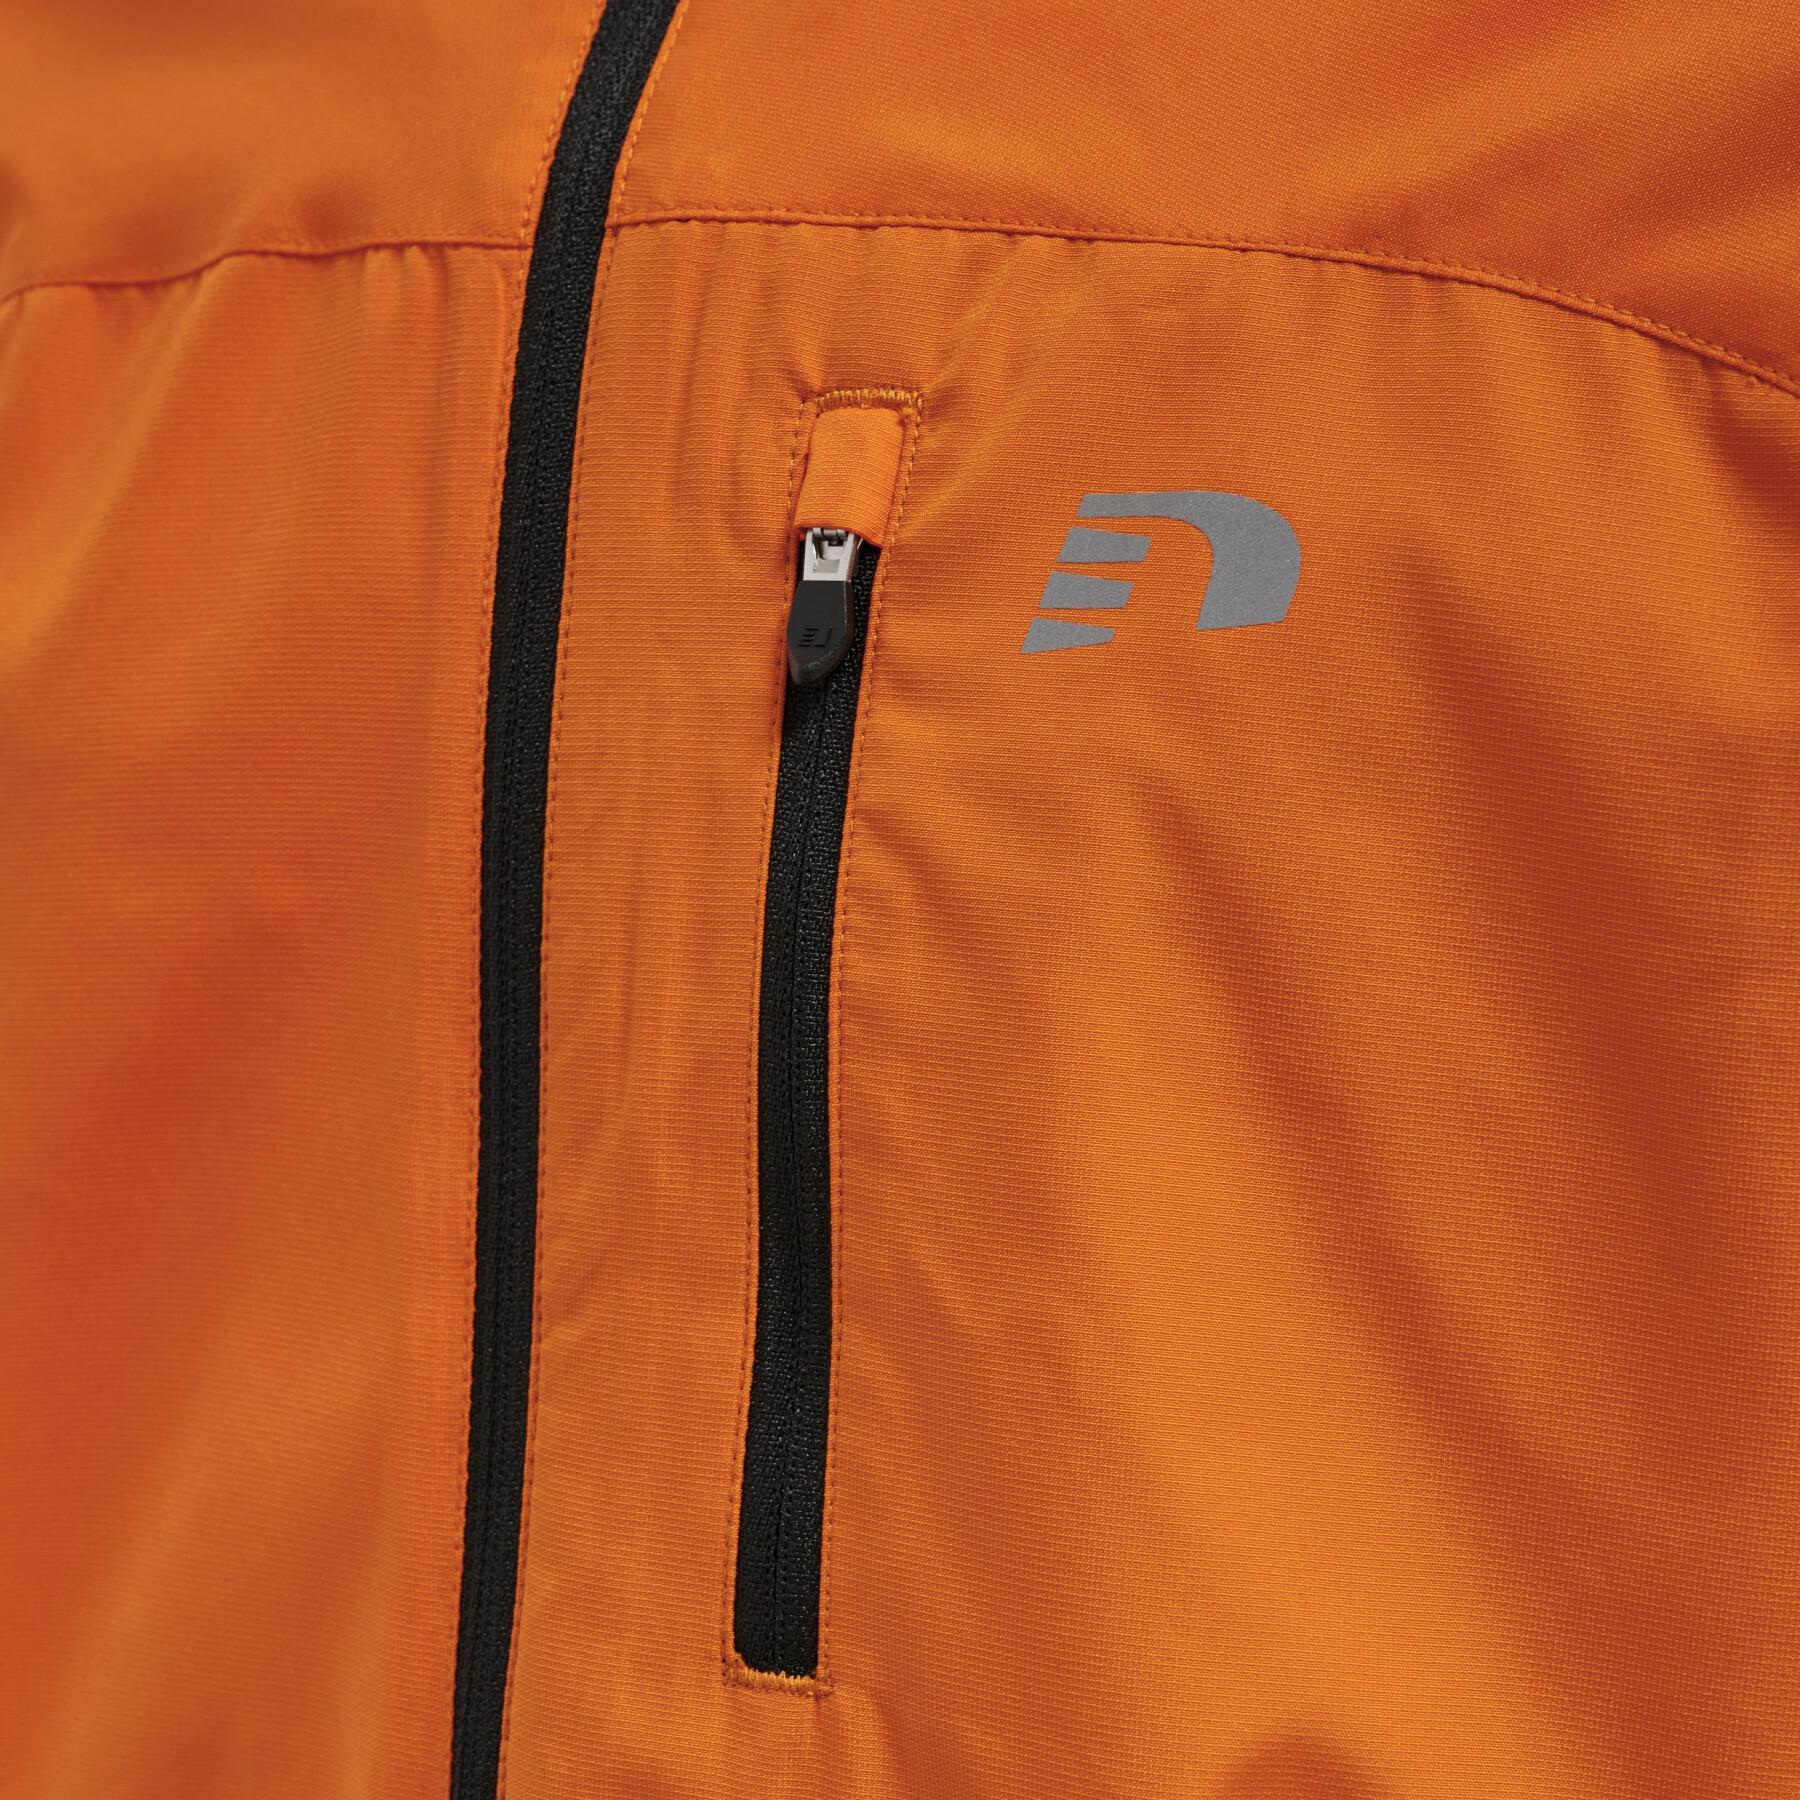 Children's tracksuit jacket Newline Core